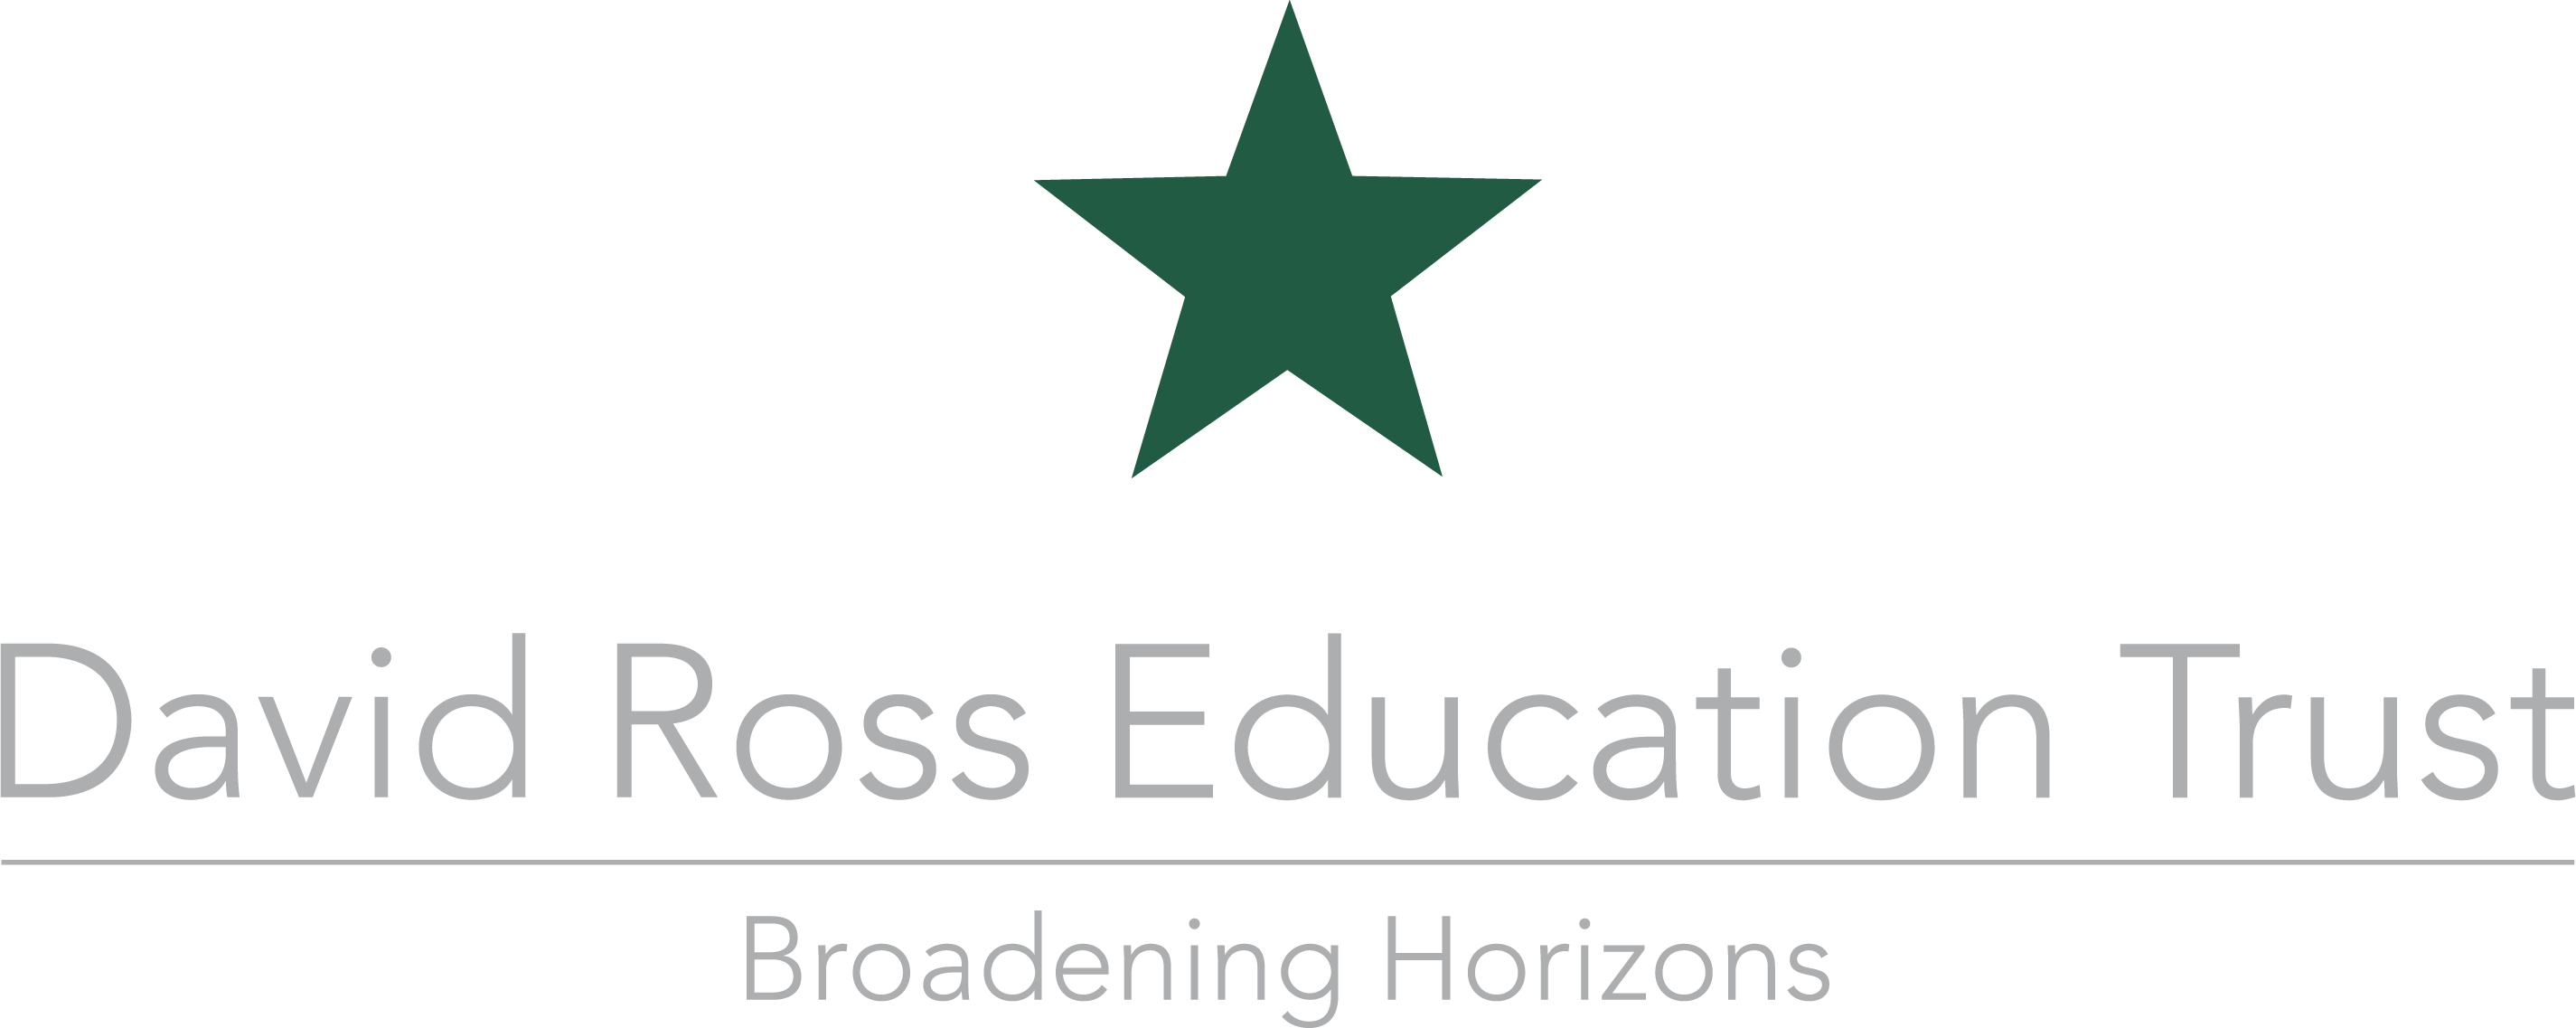 David Ross Education Trust